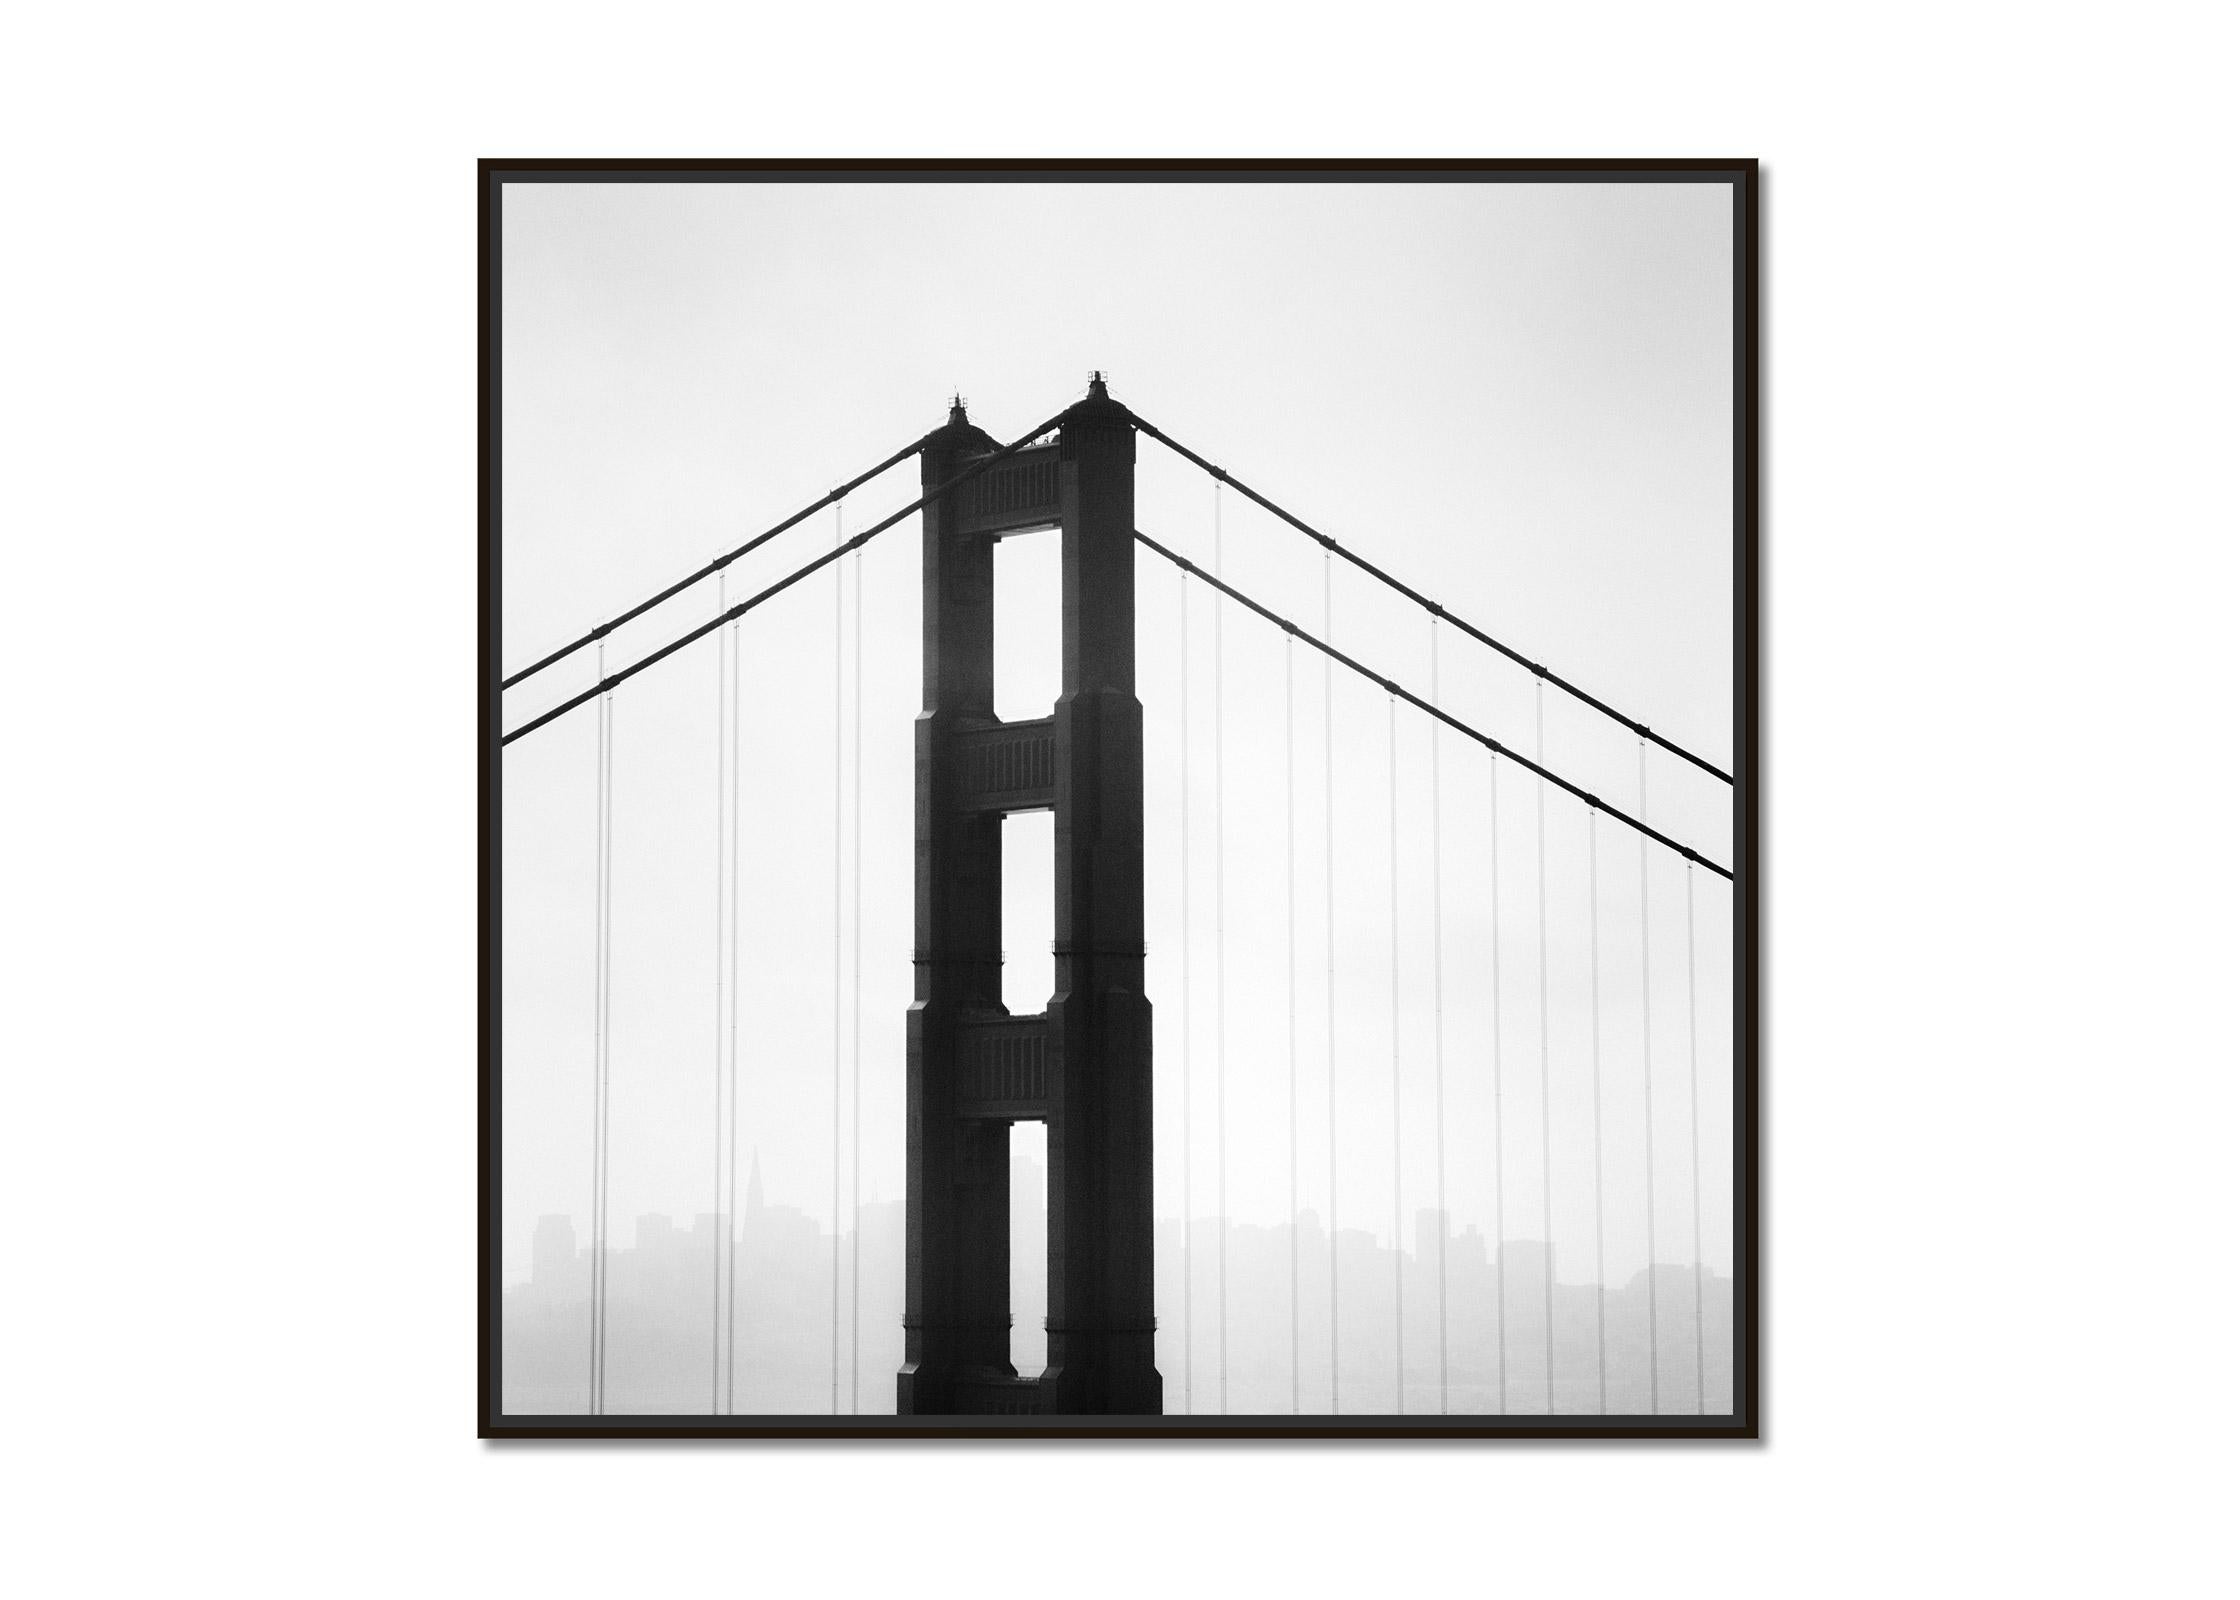 Golden Gate Bridge, San Francisco, USA, minimalistische schwarz-weiße Landschaft – Photograph von Gerald Berghammer